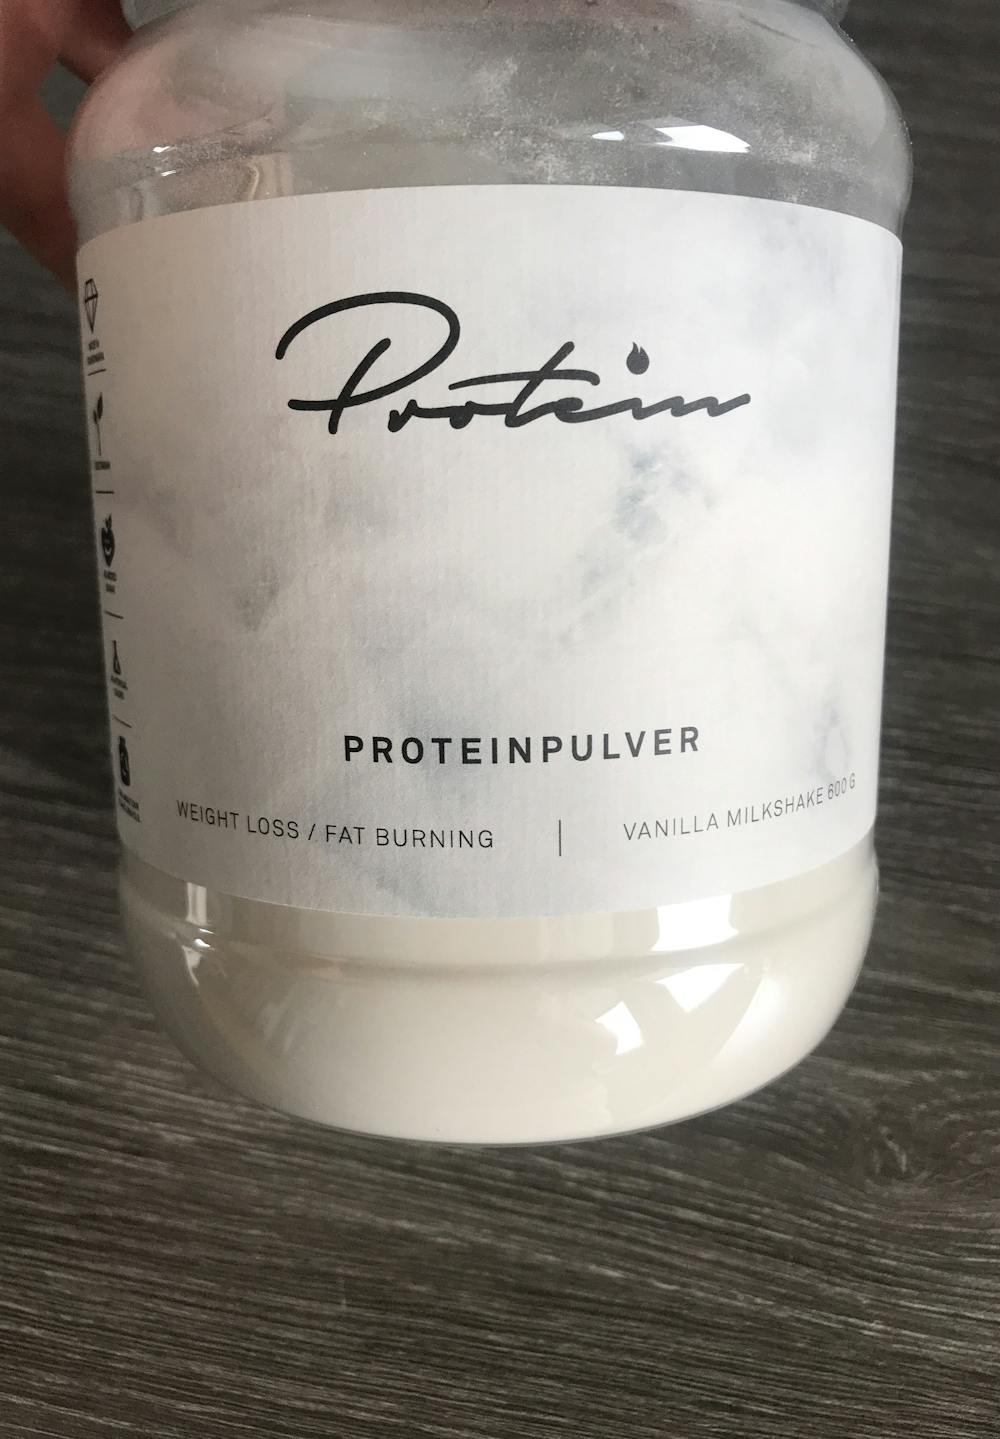 Proteinpulver, vanilla milkshake, Protein